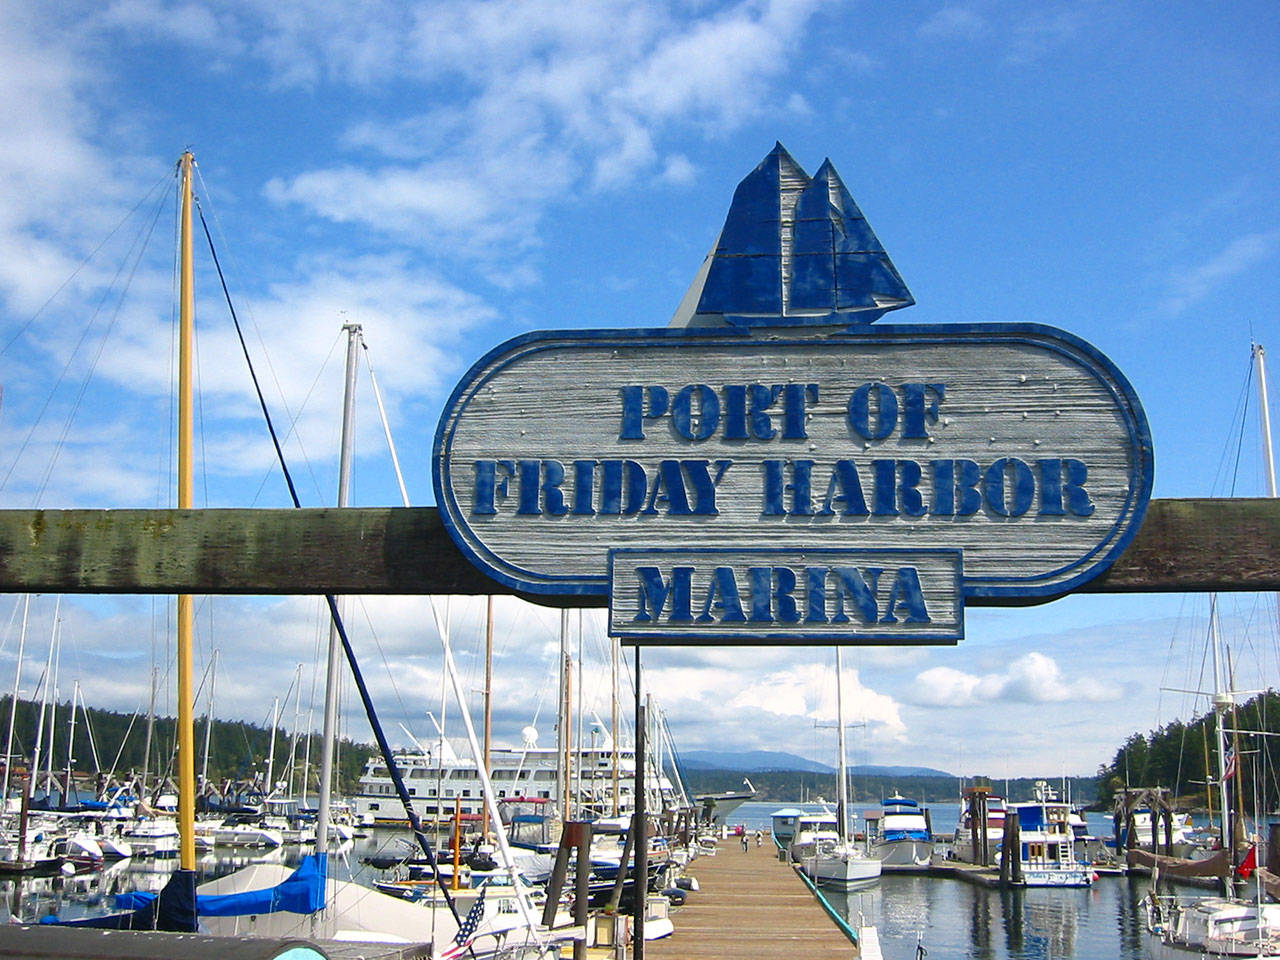 Port of Friday Harbor addresses allegations